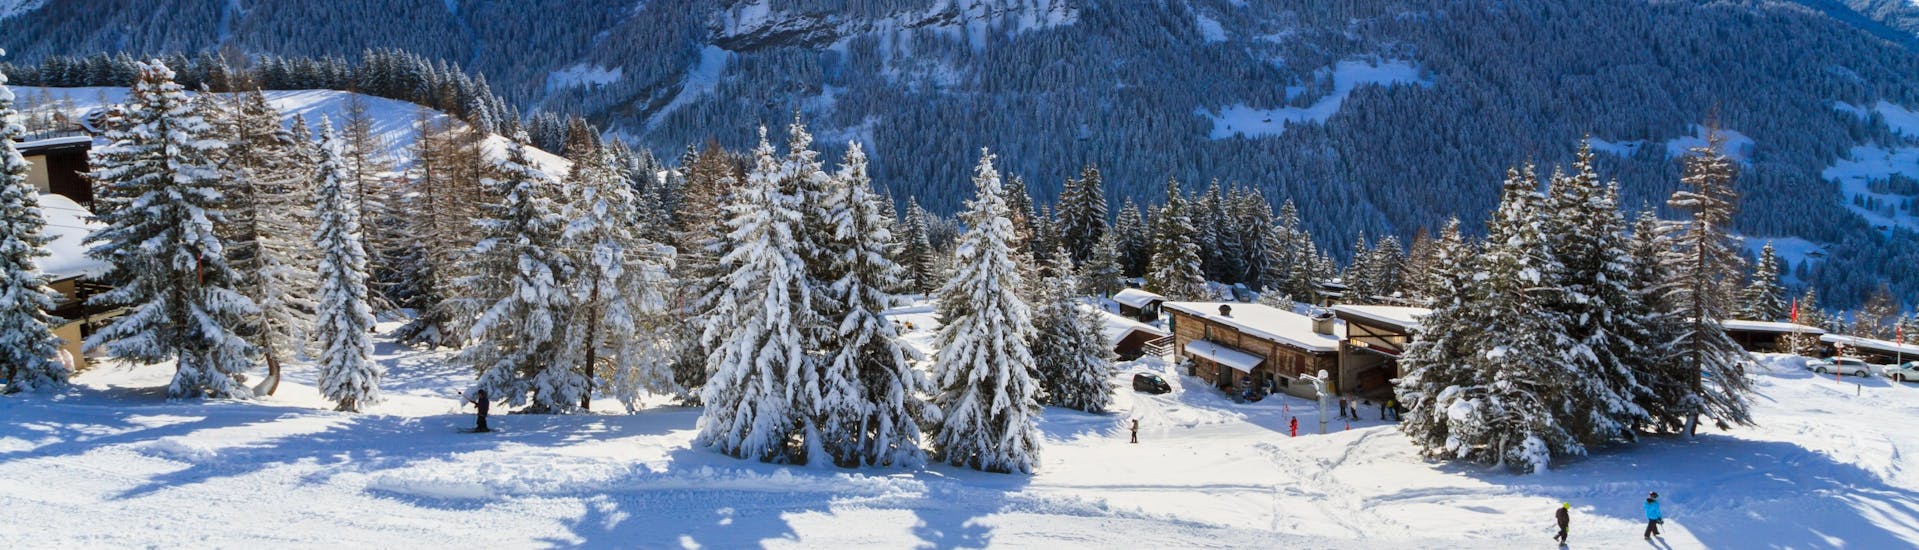 Une vue panoramique des pistes de ski et des montagnes environnantes de Villars, une station de ski suisse populaire où les visiteurs peuvent prendre des cours de ski avec une des écoles de ski locales.